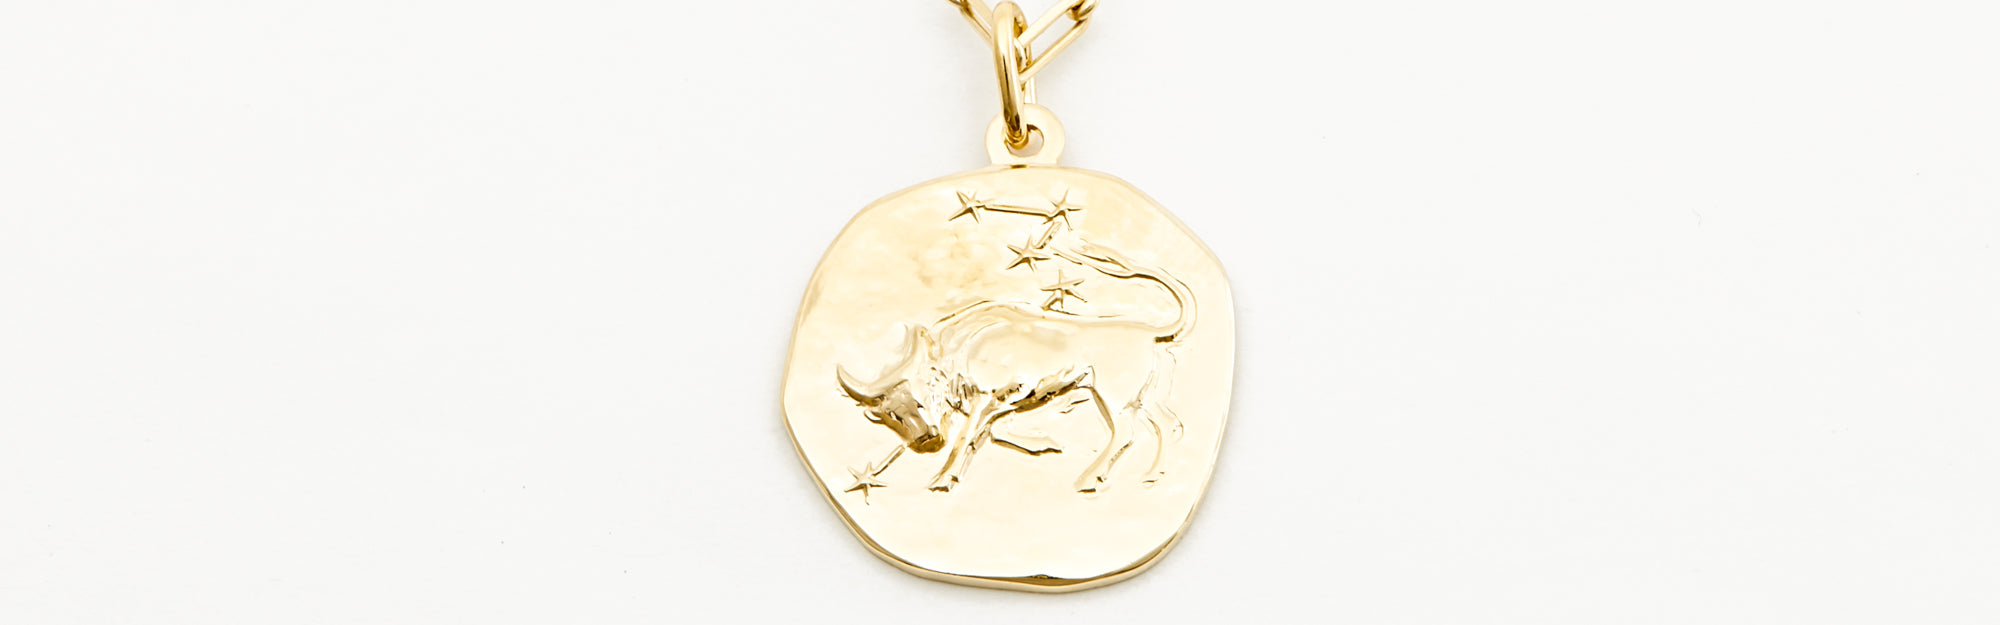 Taurus Zodiac Necklace